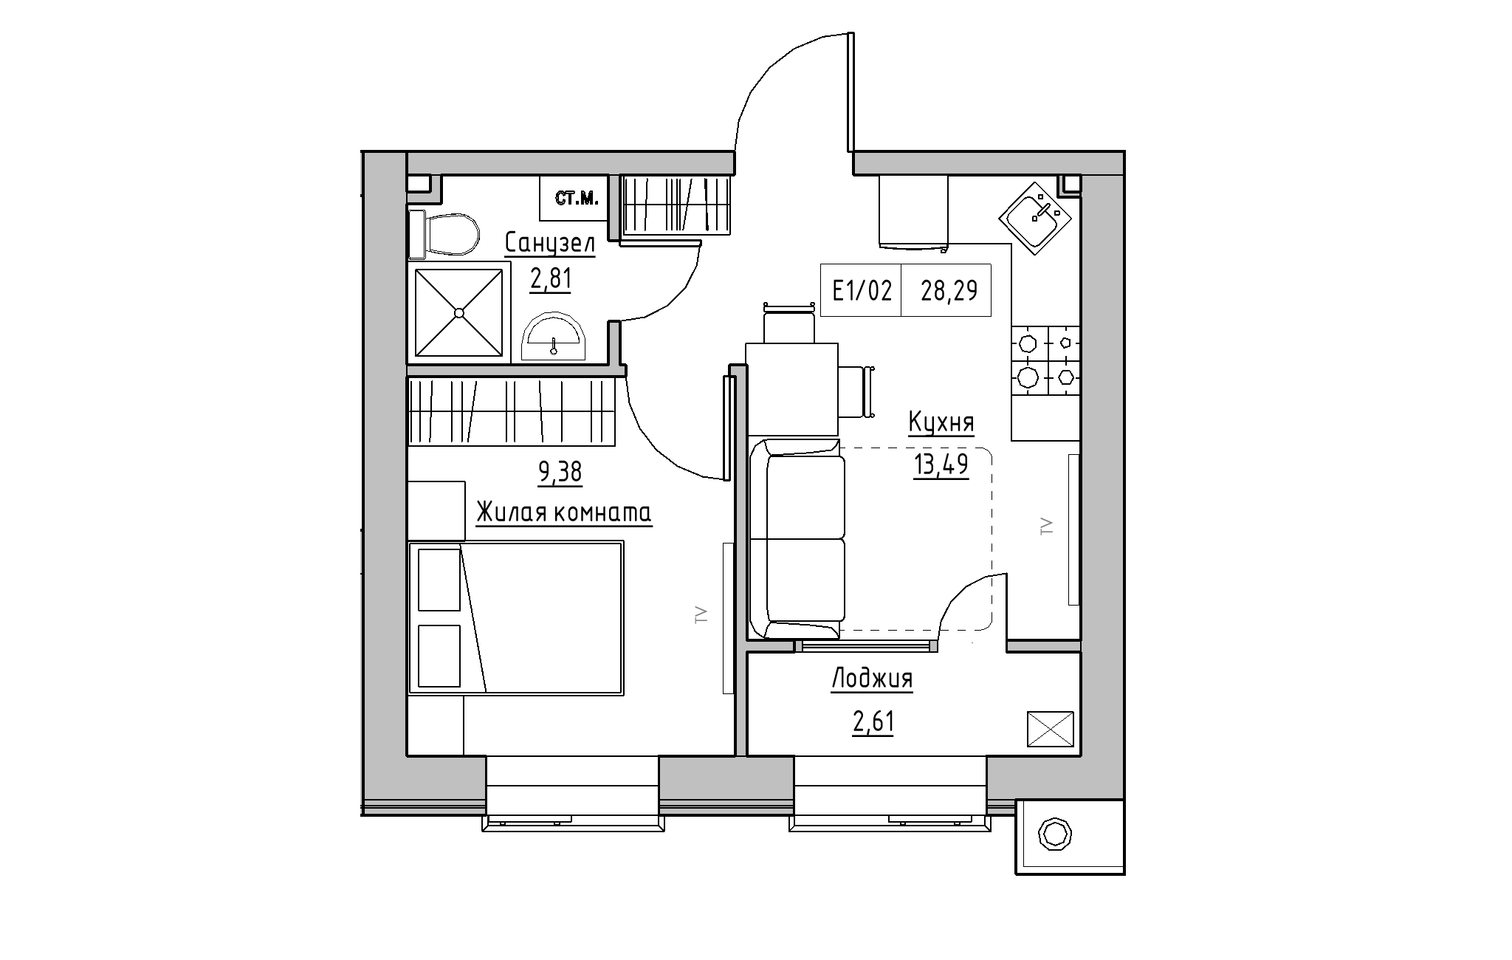 Планування 1-к квартира площею 28.29м2, KS-013-05/0016.